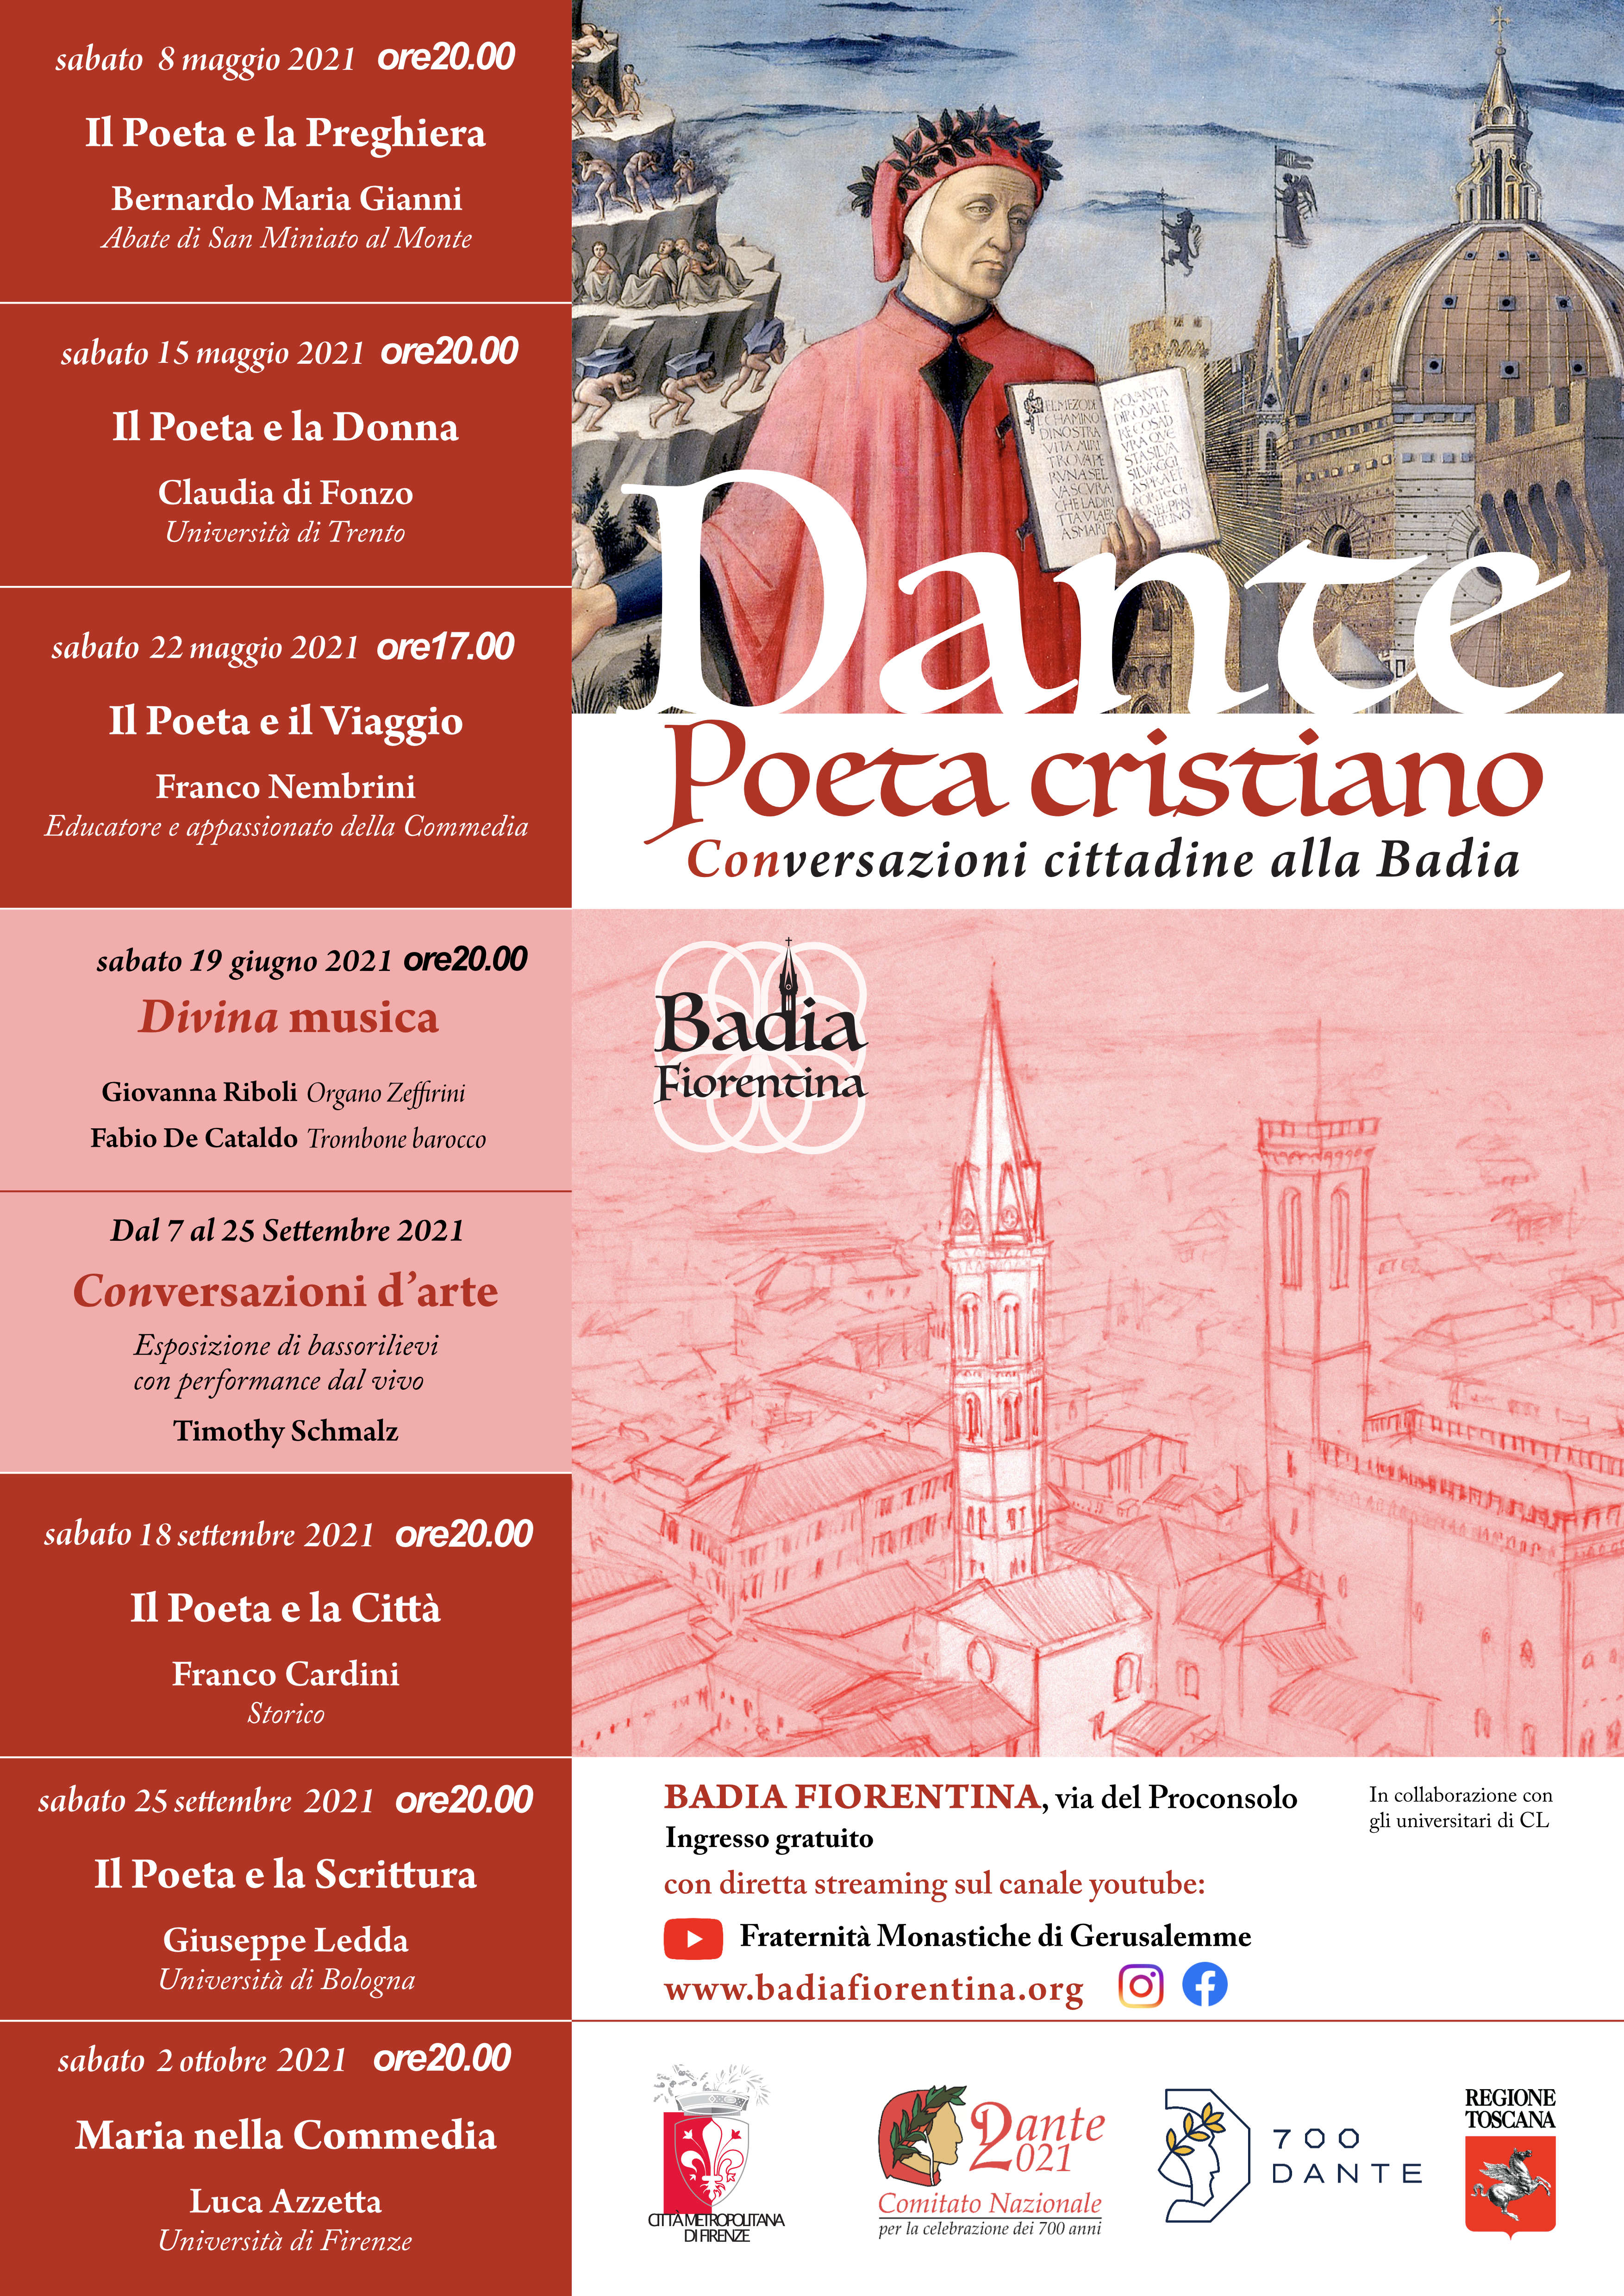 Dante Poeta Cristiano - Conversazione cittadine alla Badia Sabato 8 maggio 2021 ore 20:00